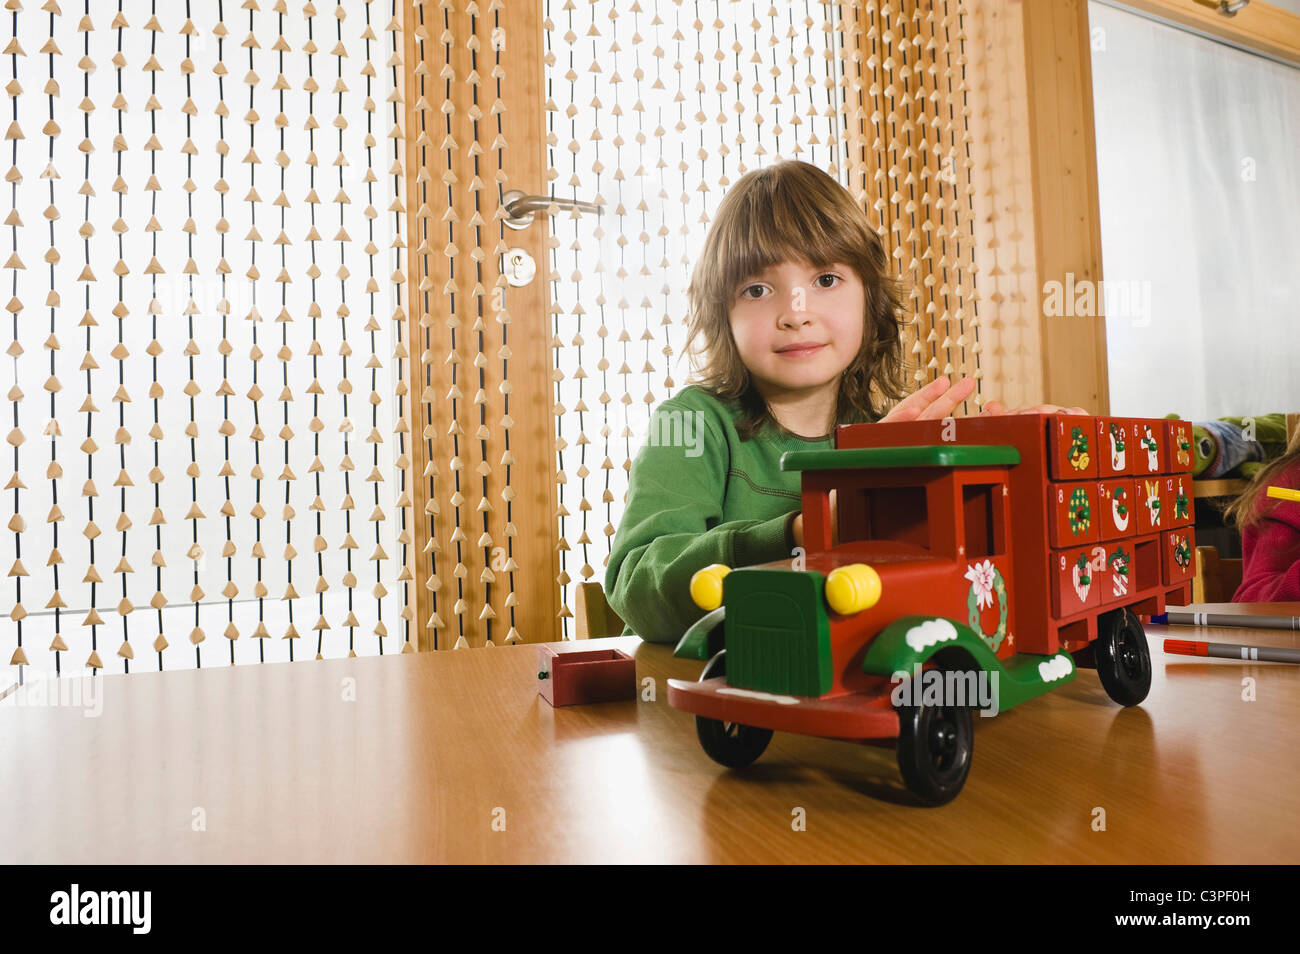 Allemagne, Boy (6-7) dans les jardins d'Playing with toy voiture, portrait Banque D'Images